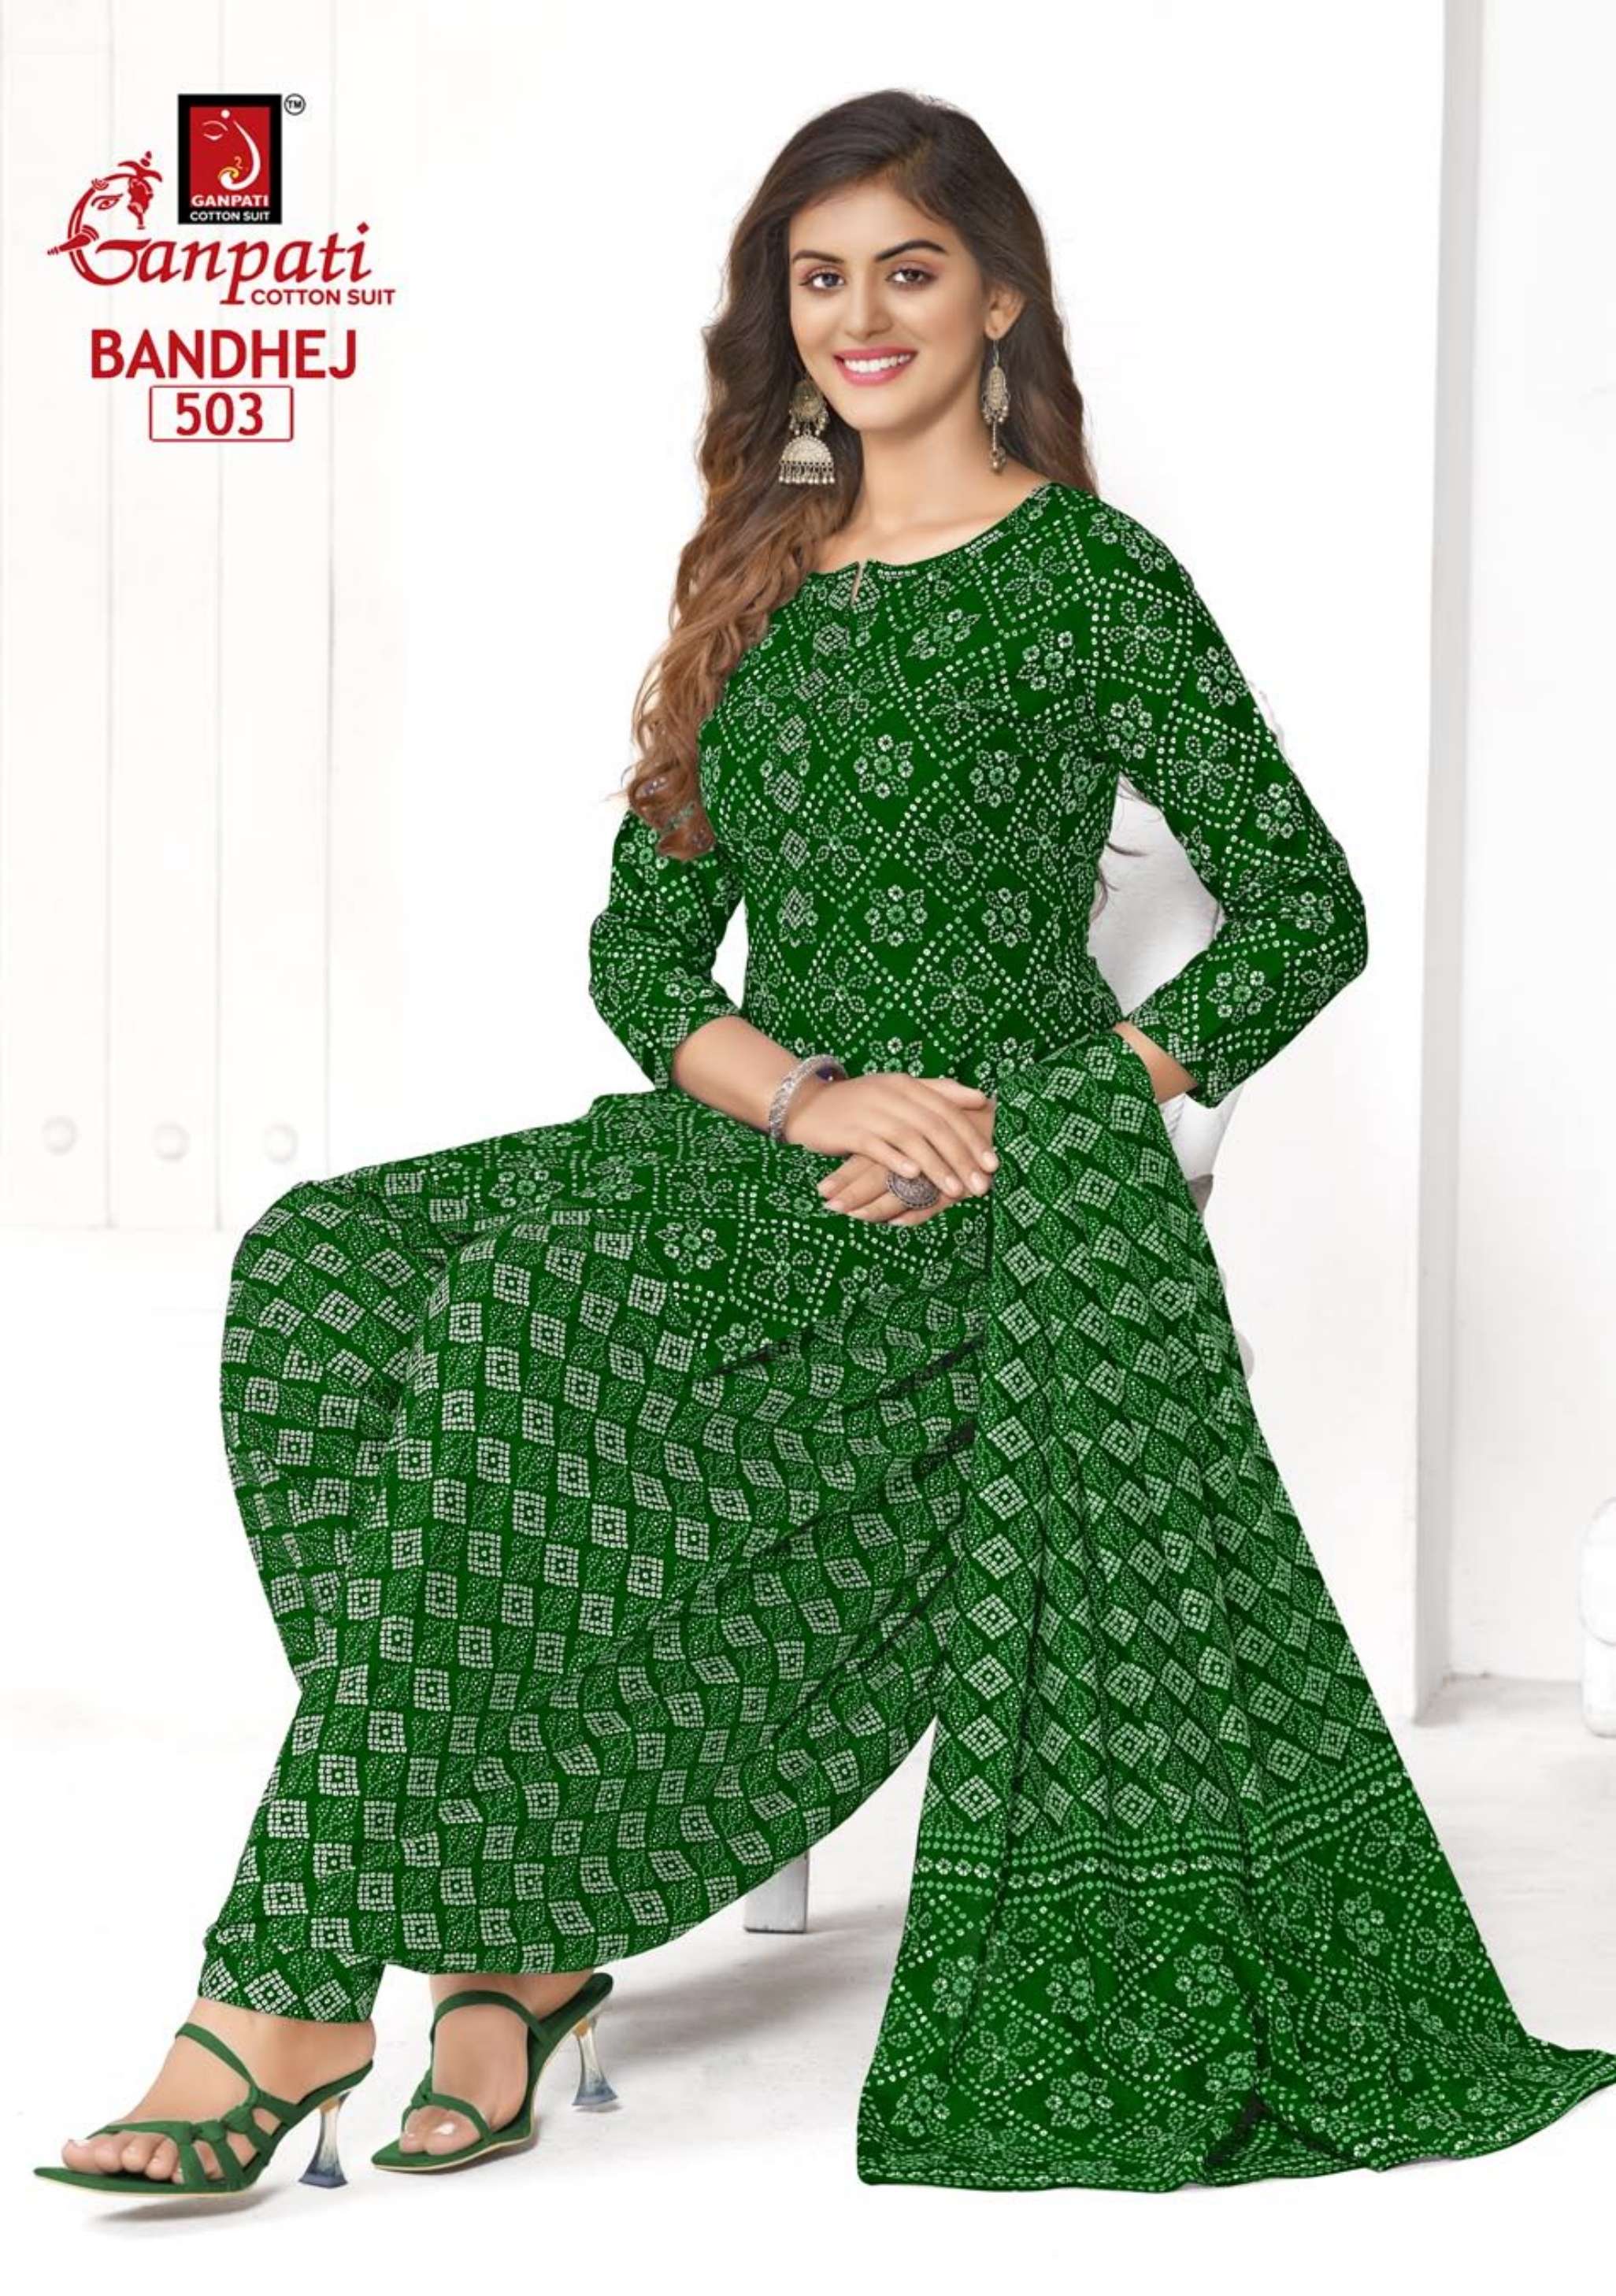 ganpati cotton suits bandhej vol-5 501-515 series patiyala cotton salwar kameez wholesaler surat gujarat